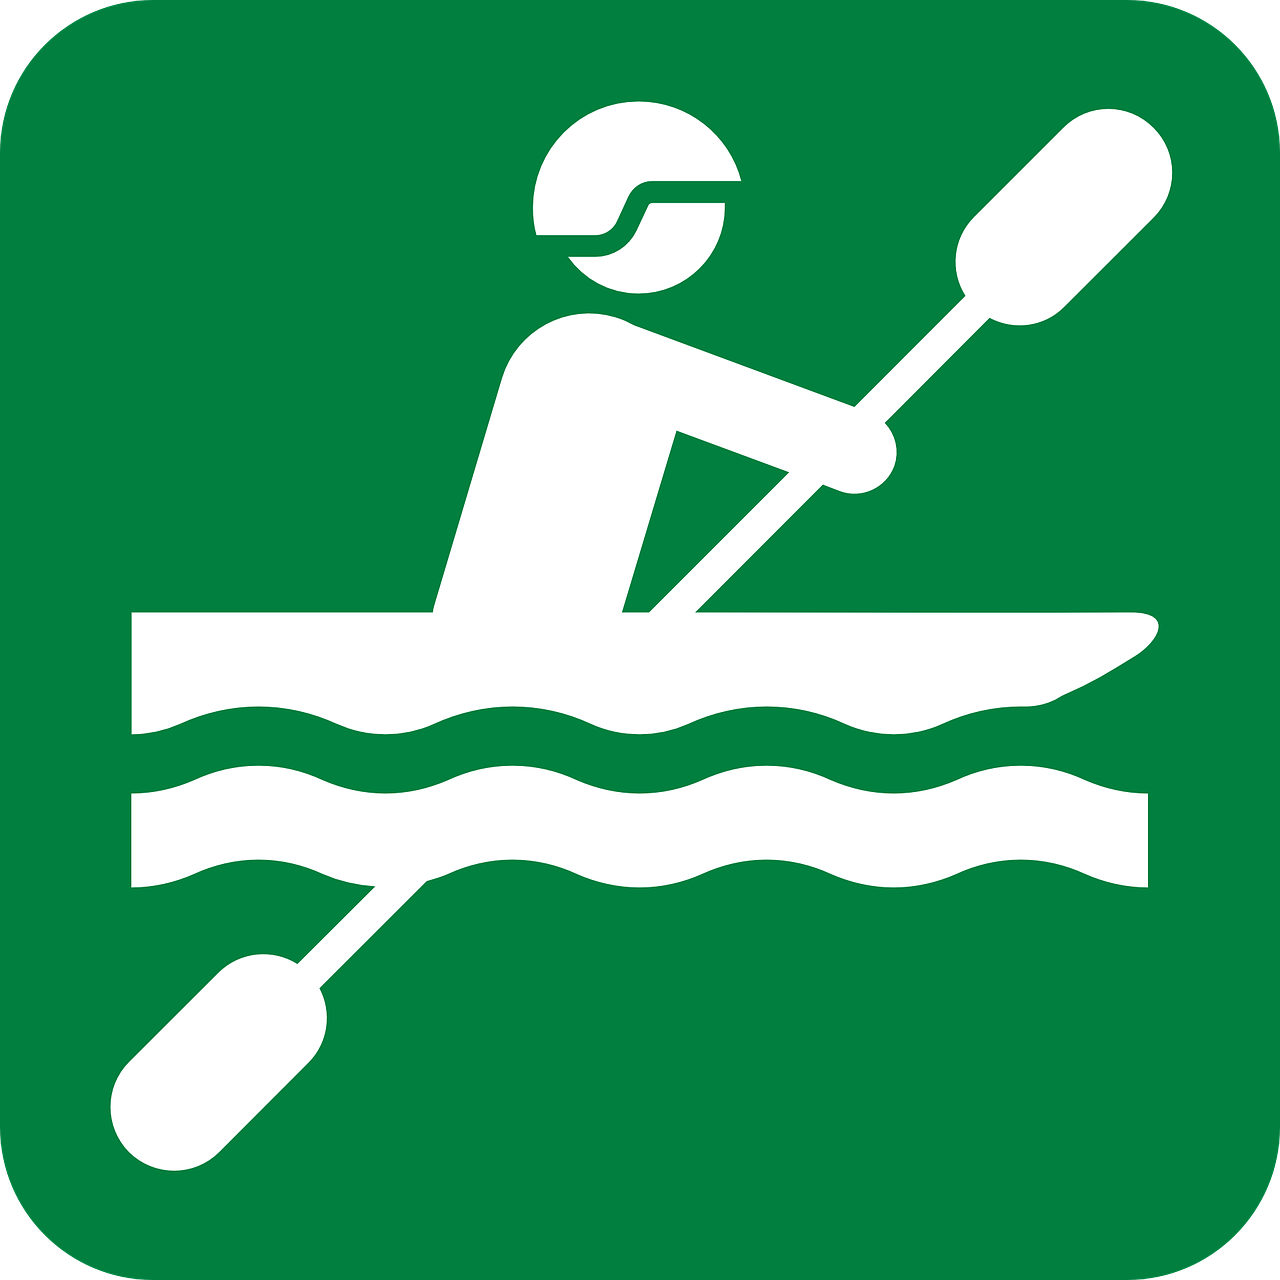 Schild "Kajak unterwegs". Foto:Clker-Free-Vector-Images via Pixabay